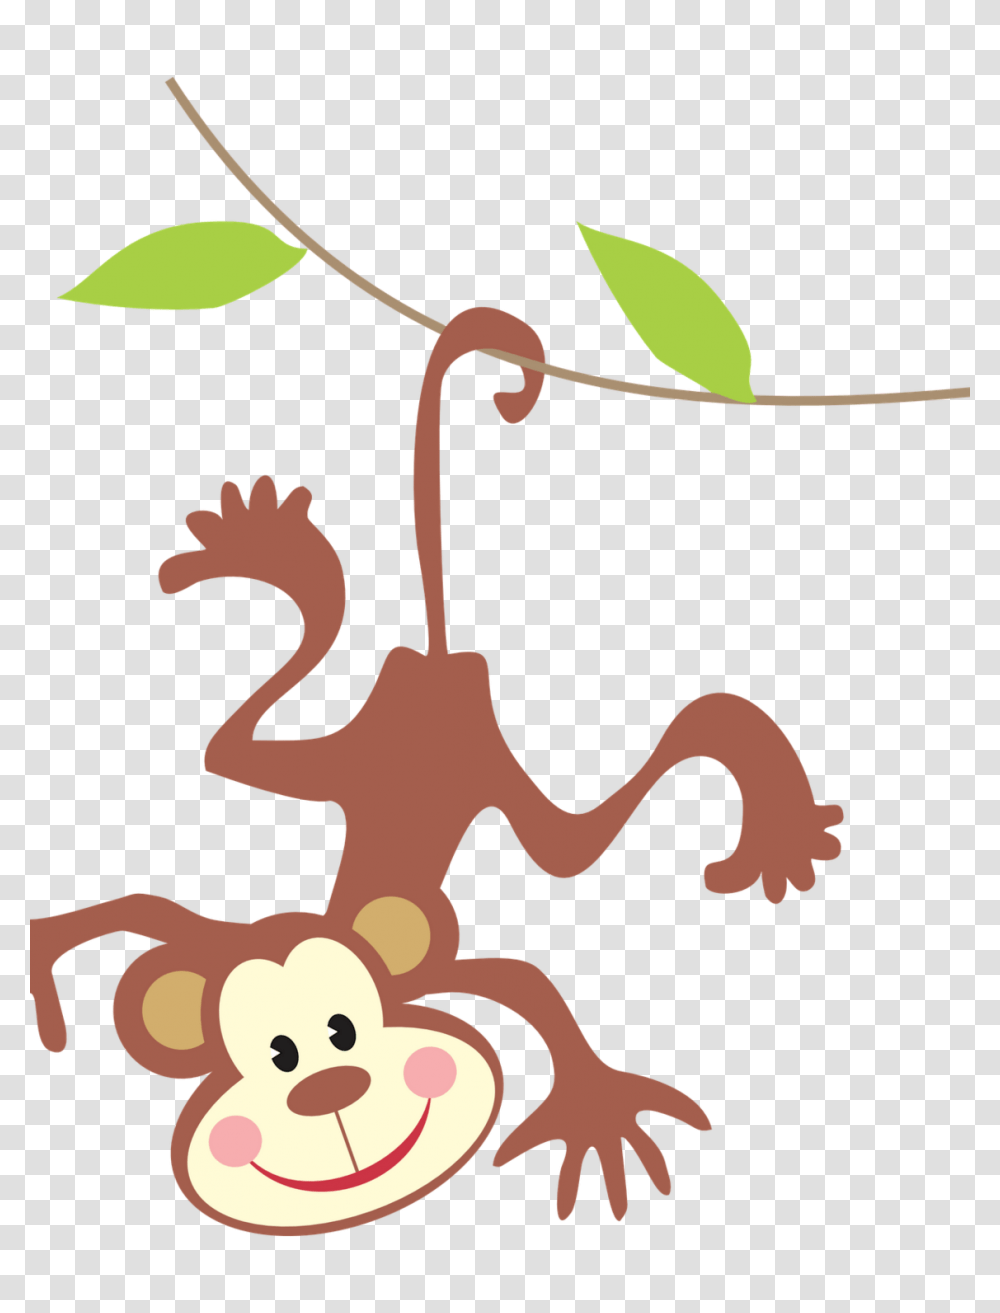 Baby Monkeys Clip Art, Leaf, Plant, Seed Transparent Png